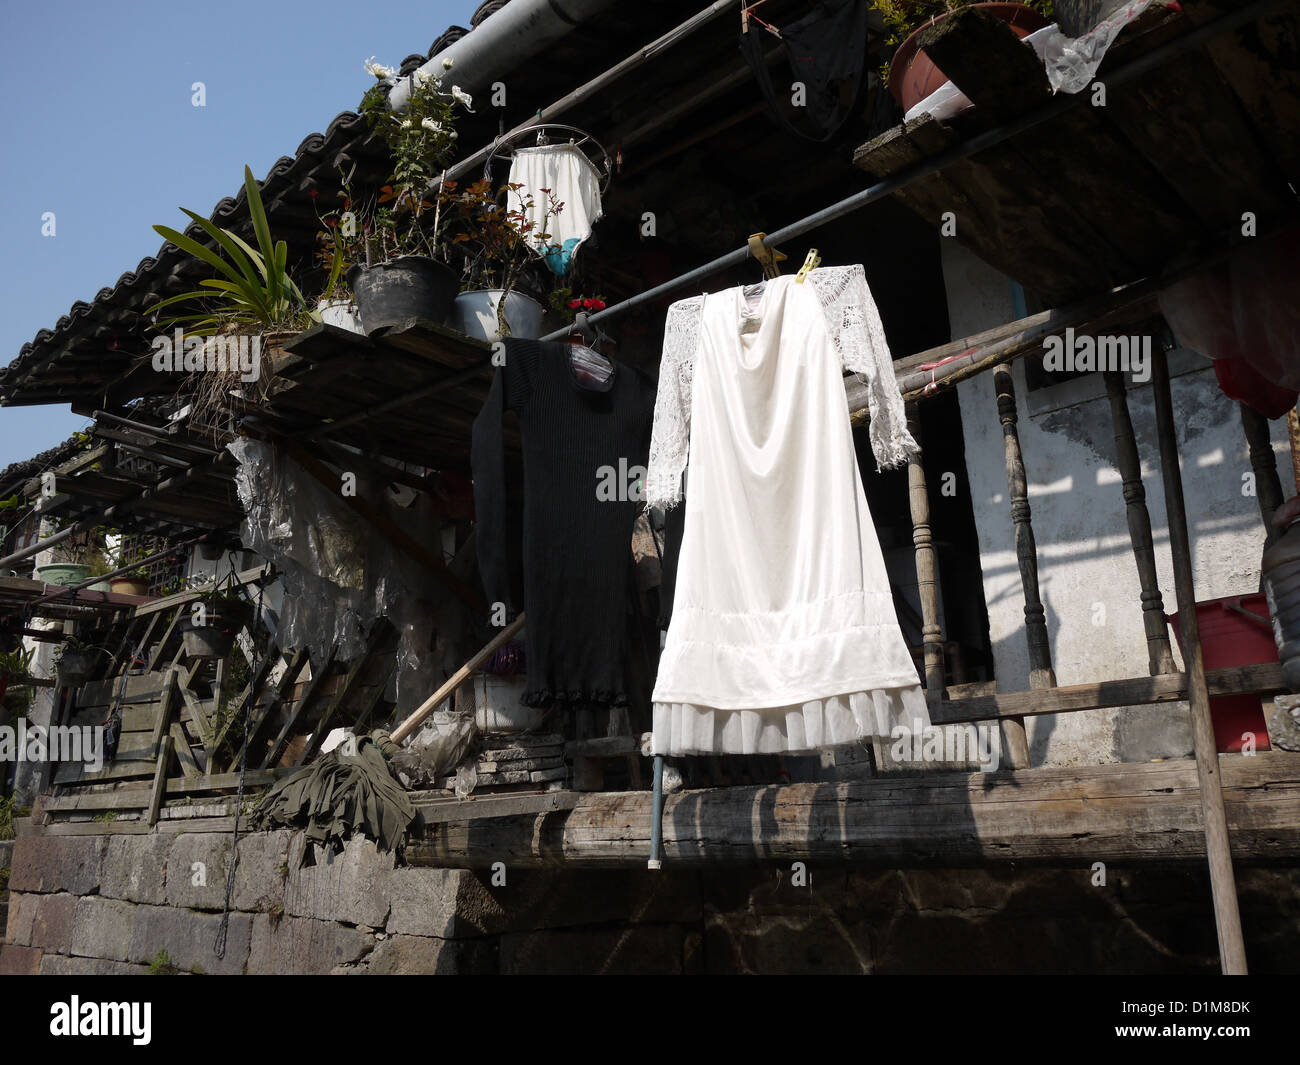 Robe blanche hanging piscine intérieure maison sèche Banque D'Images